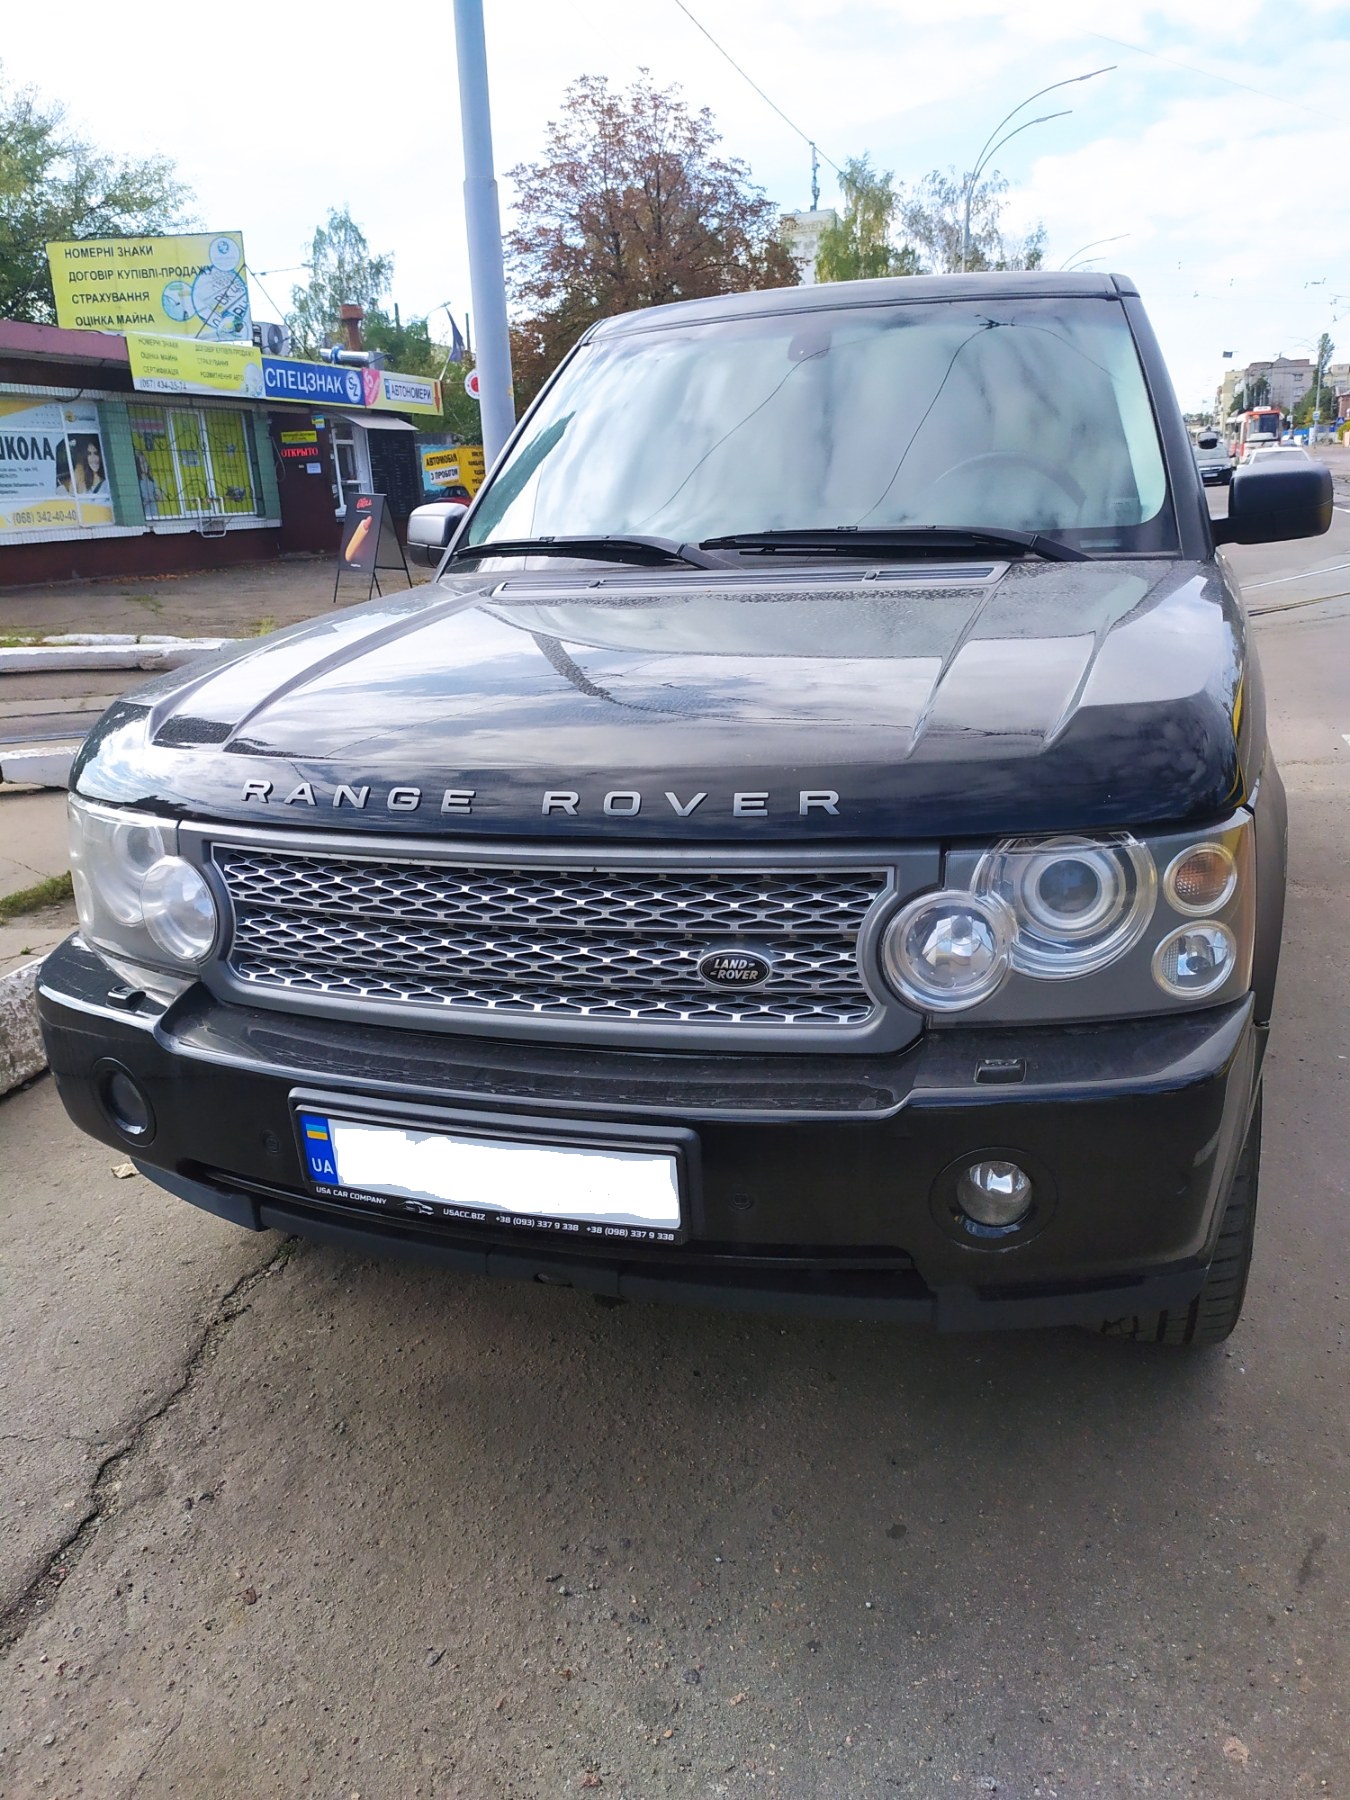 Аренда авто с правом выкупа Рендж Ровер Киев без залога